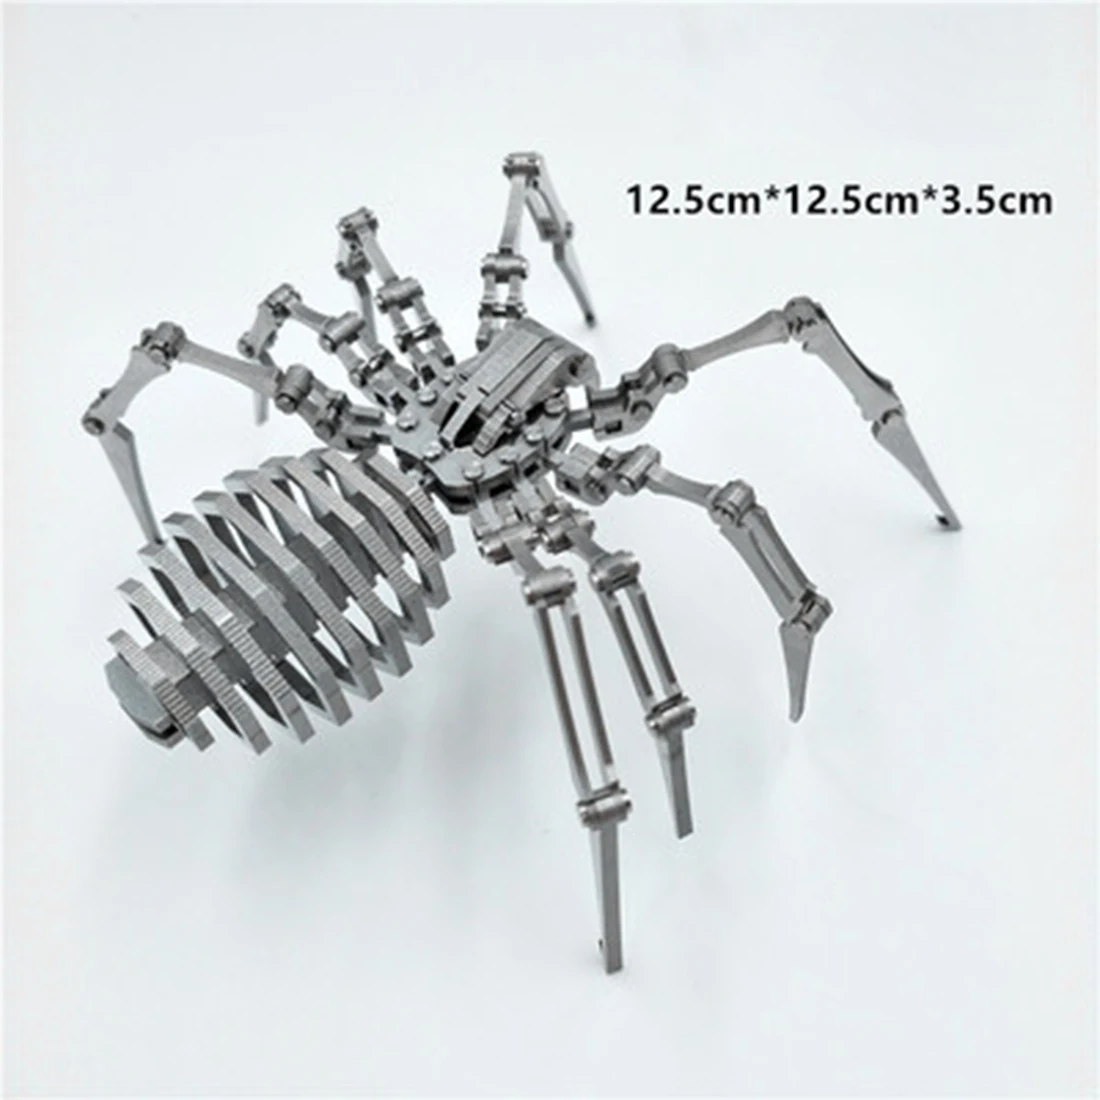 Surwish DIY Сборная модель строительный комплект 3D из нержавеющей стали сборный съемный паук король модель домашнего офиса украшения подарок